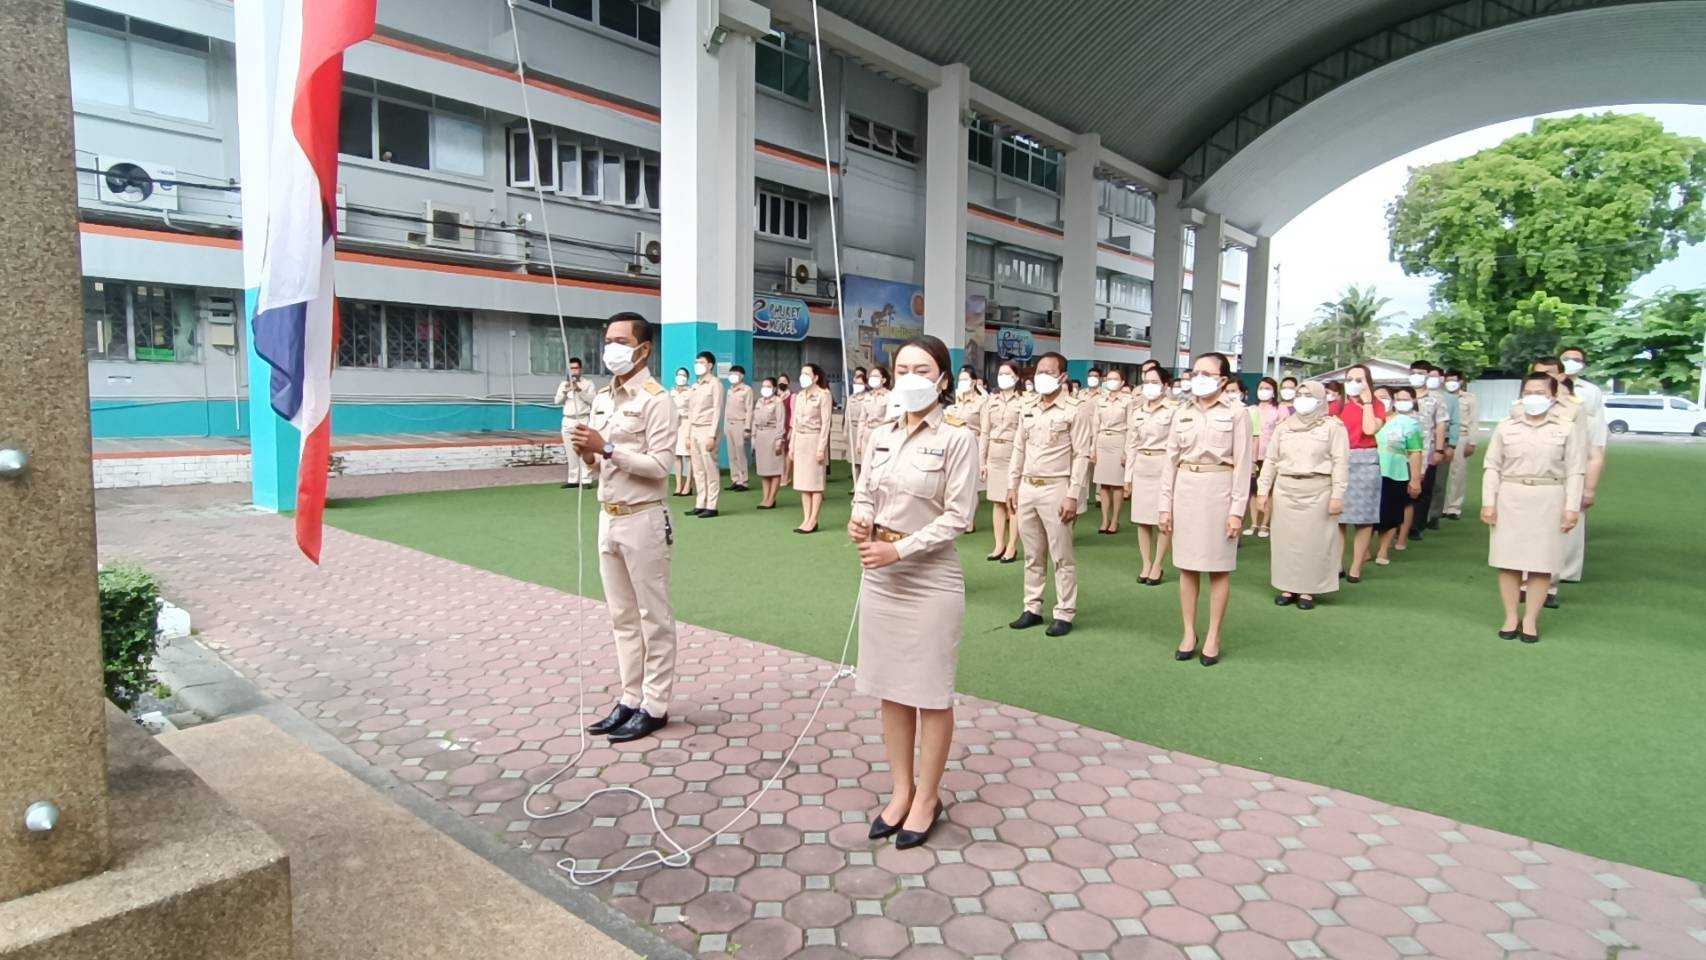 วันพุธที่ 28 กันยายน 2565 นายวิทยา เกตุชู ผู้อำนวยการวิทยาลัยอาชีวศึกษาภูเก็ต และบุคลากรทางการศึกษา ร่วมกิจกรรมวันพระราชทานธงชาติไทย ประจำปี 2565 ณ ลานอาชีวะสัมพันธ์ วิทยาลัยอาชีวศึกษาภูเก็ต